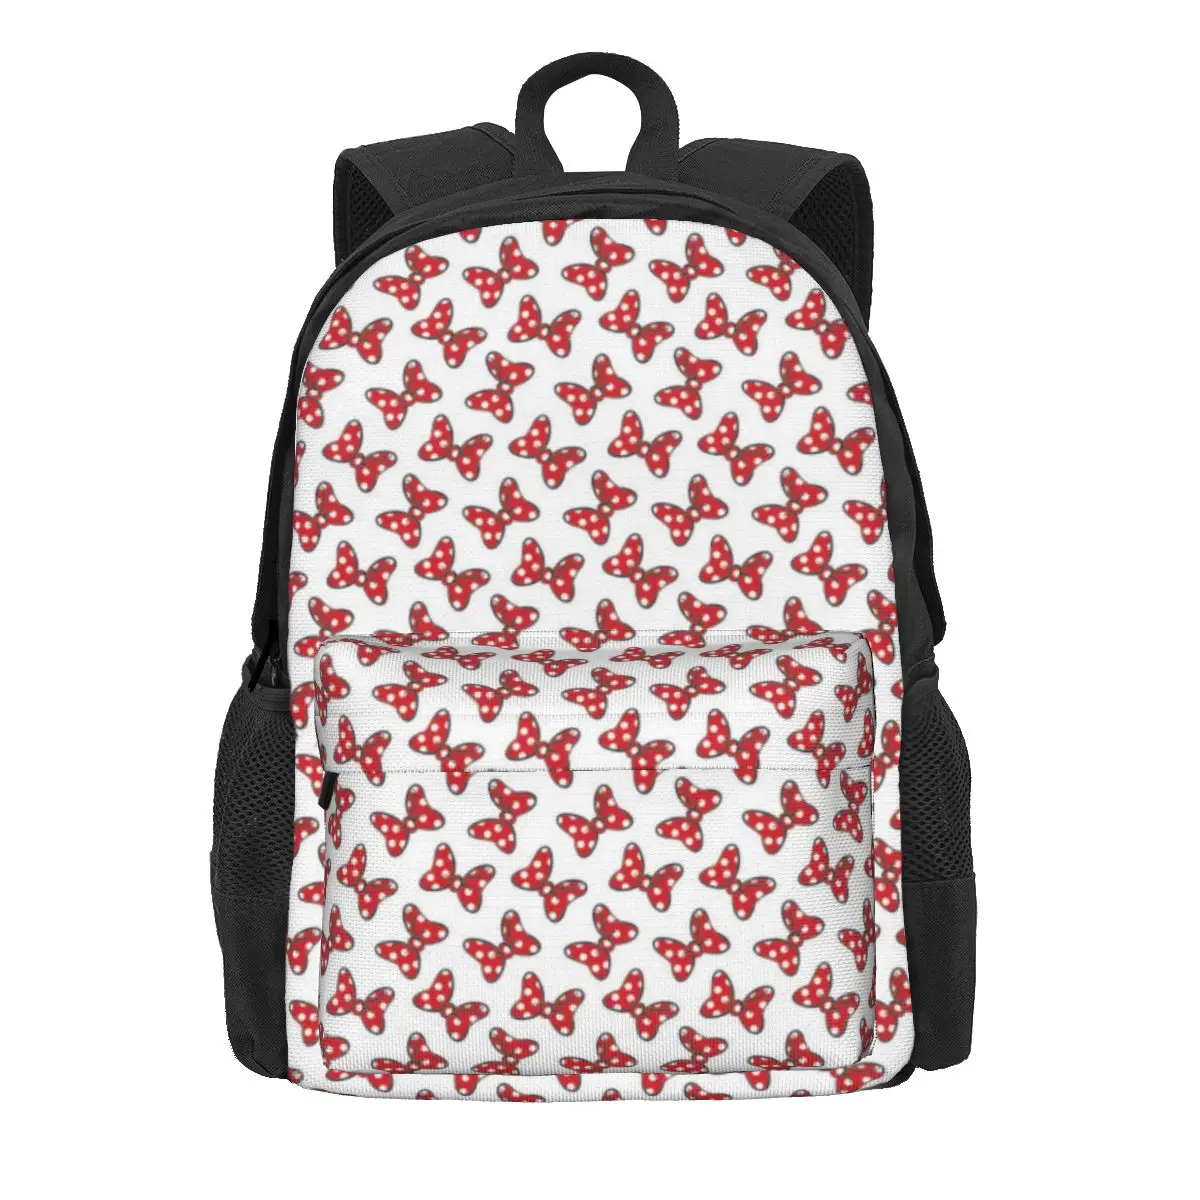 Женский рюкзак Disney с Минни Маус и Микки, школьная сумка Mochila, мультяшный компьютерный рюкзак для мальчиков и девочек, сумка через плечо - 0